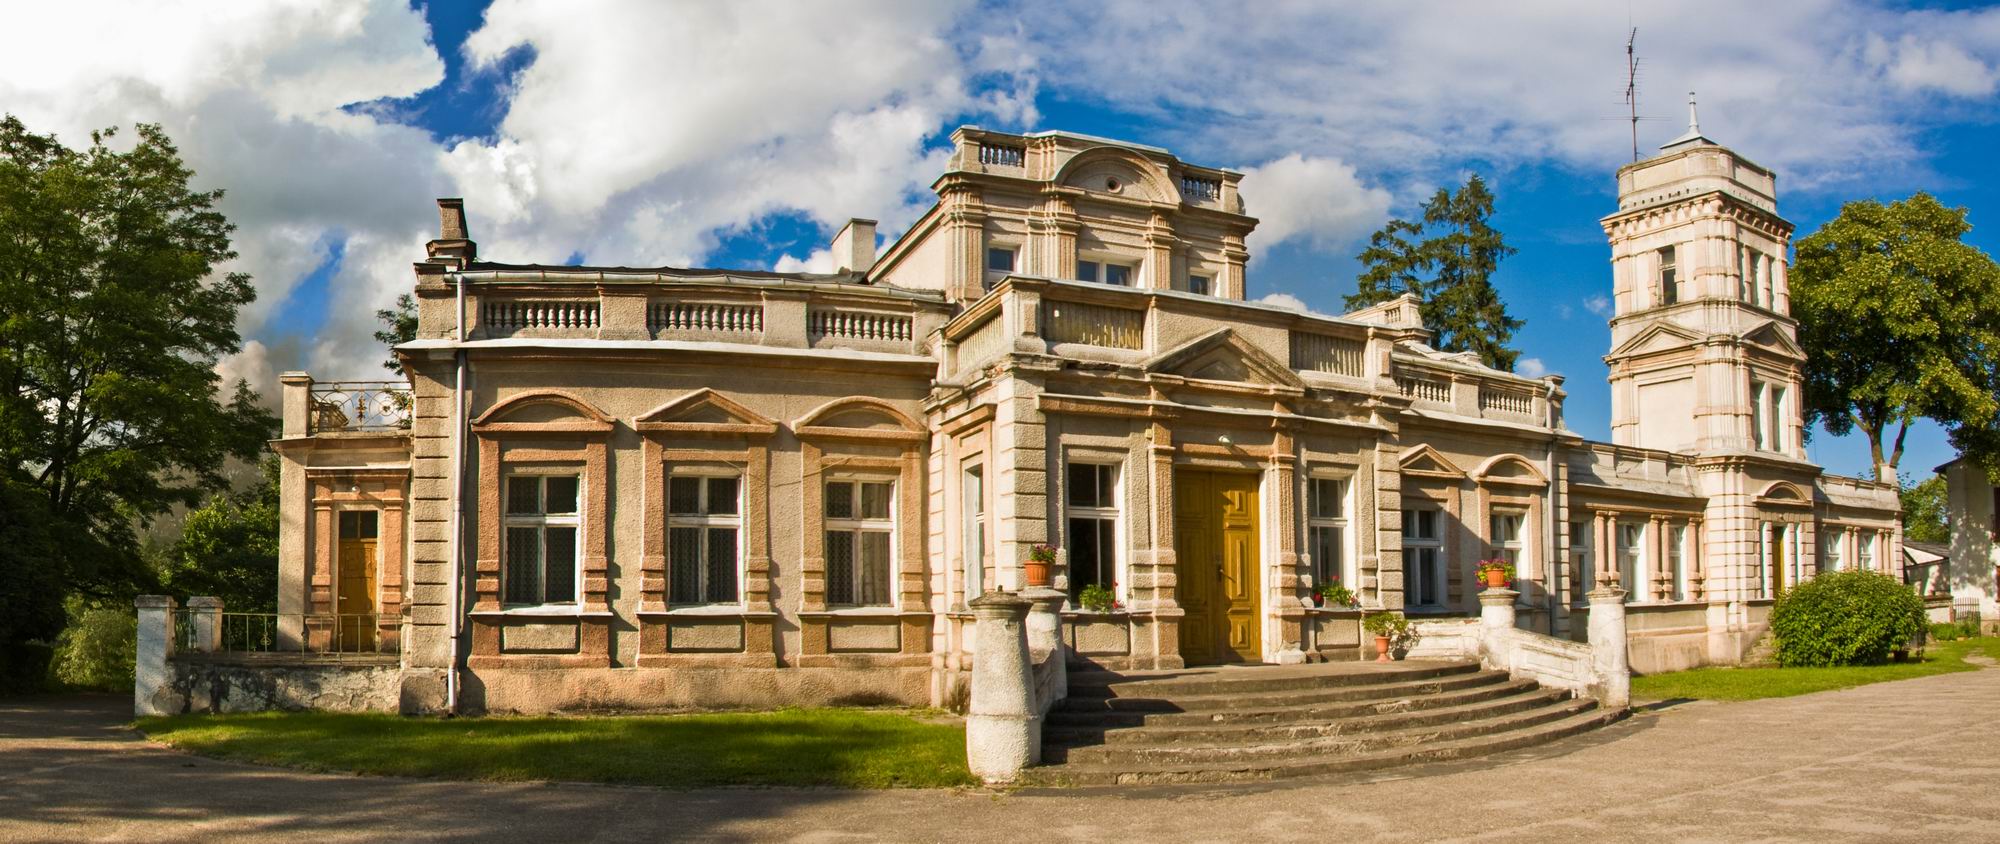 Mieczownica - pałac